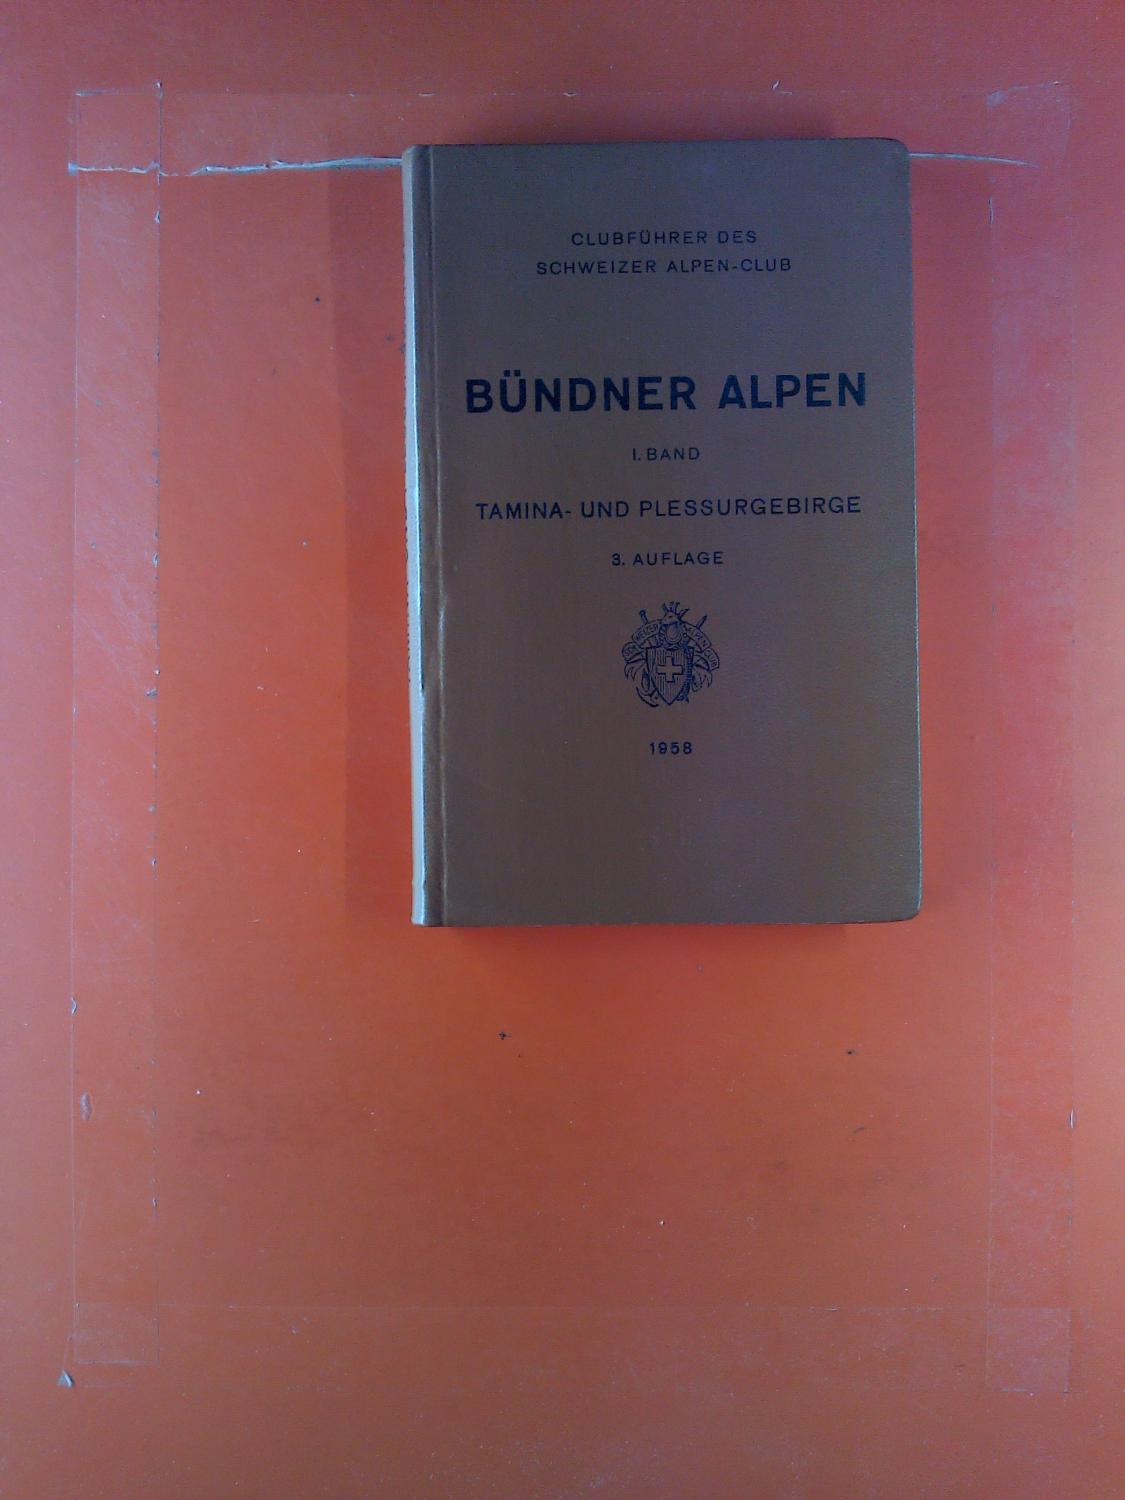 Clubführer durch die Bündner Alpen, I. Band. Tamina- und Plessurgebirge. - F. W. Sprecher, Carl Eggerling-Jäger, Hrsg: Schweizer-Alpen-Club